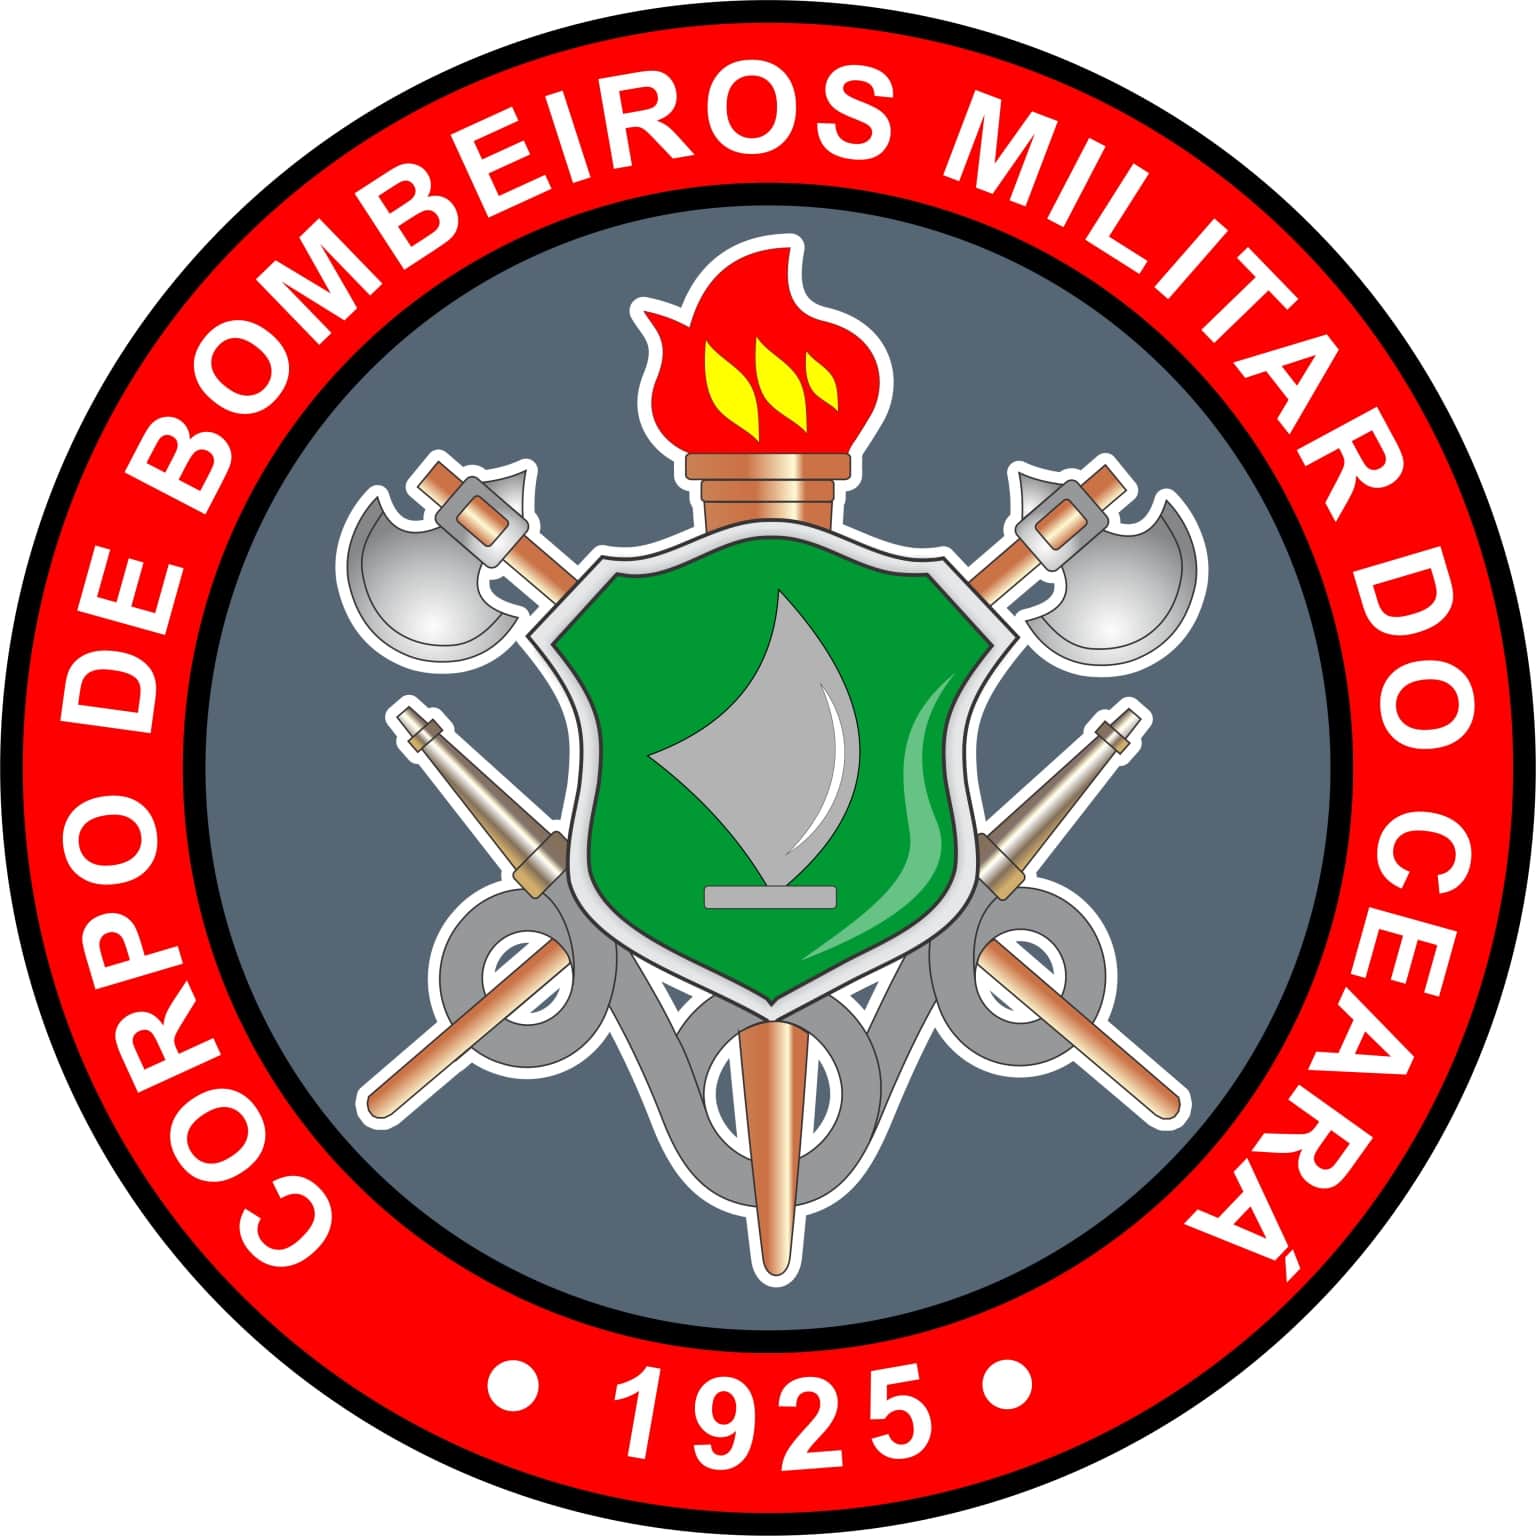 CORPO DE BOMBEIROS MILITAR DO ESTADO DO CEARÁ (CBMCE)